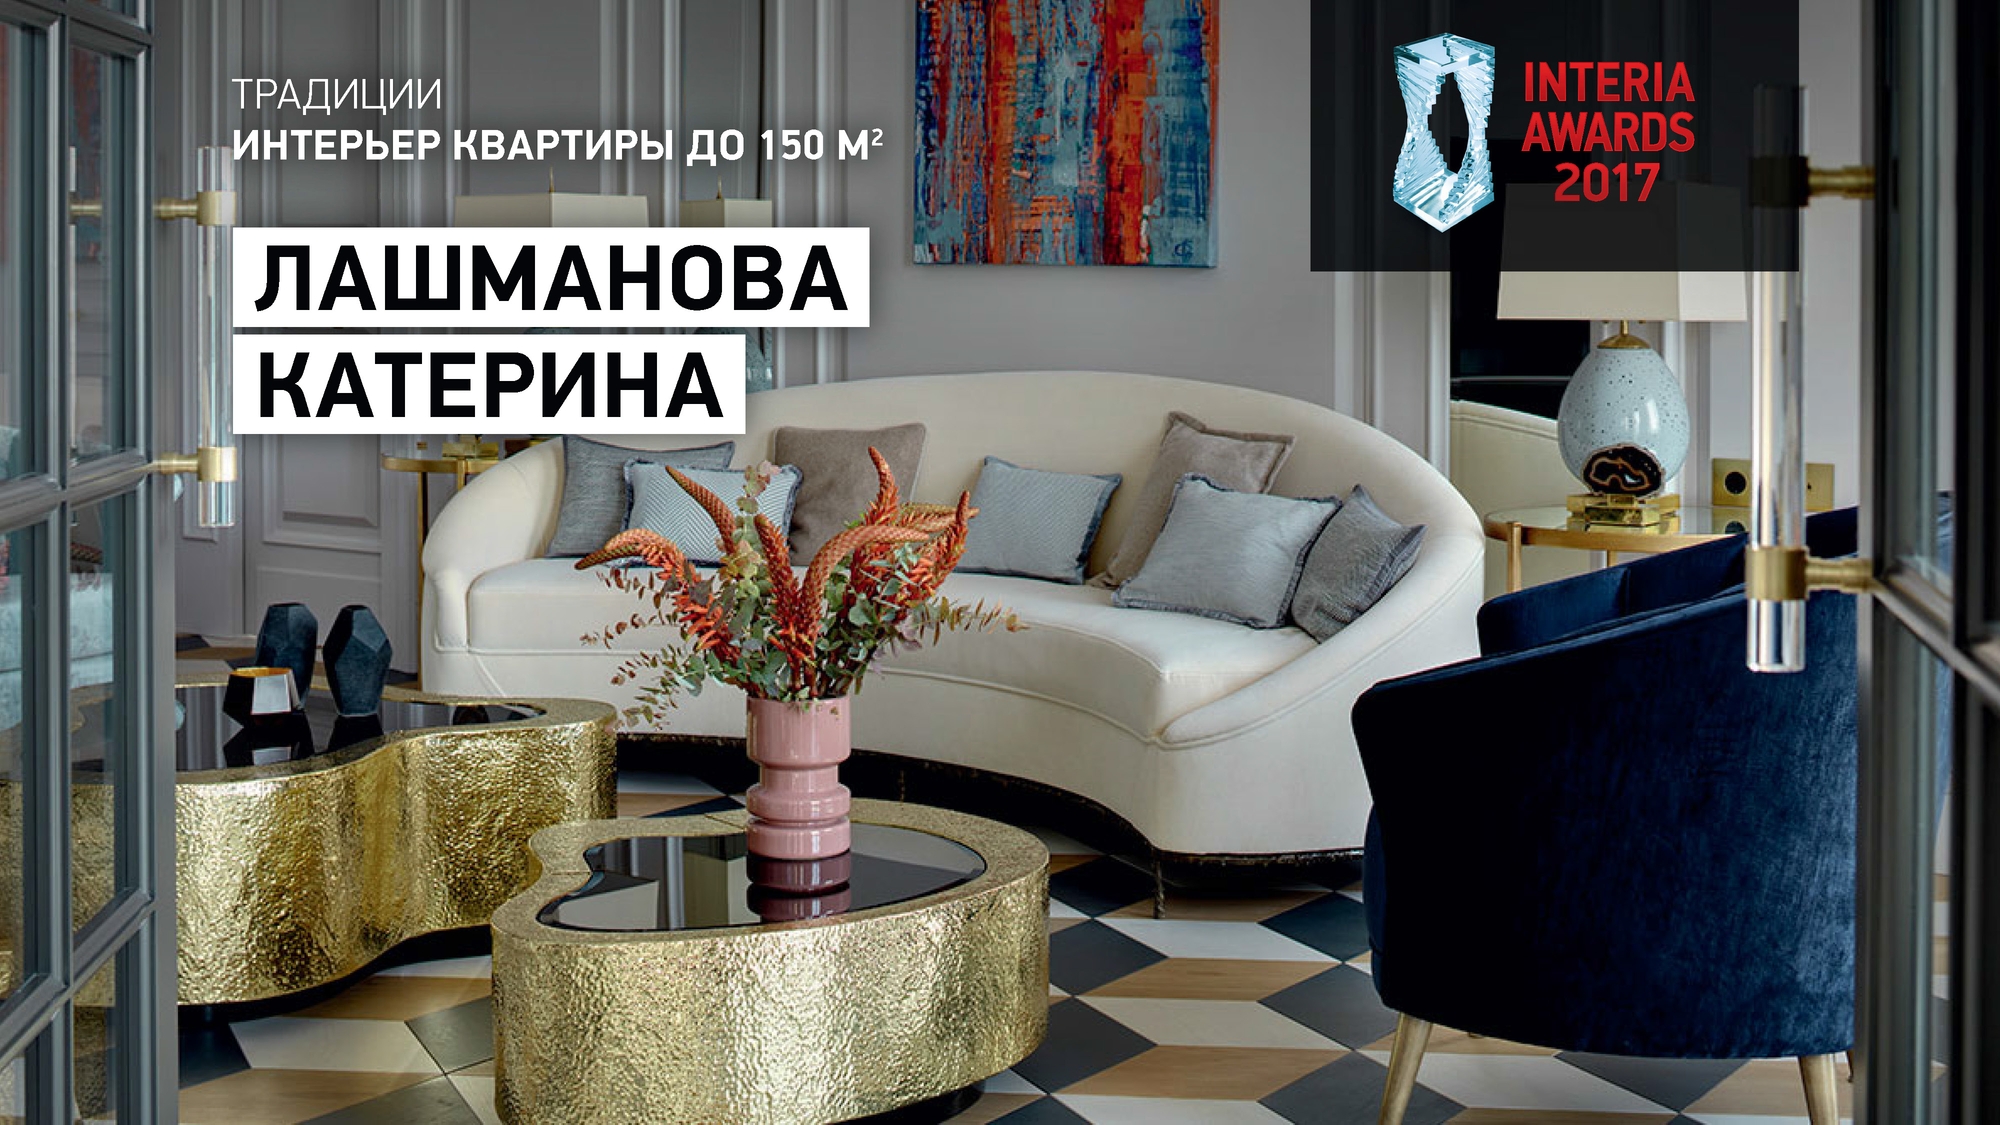 Раздел «Традиции». Победитель в номинации  «Интерьер квартиры до 150 м²» — архитектор Катерина Лашманова